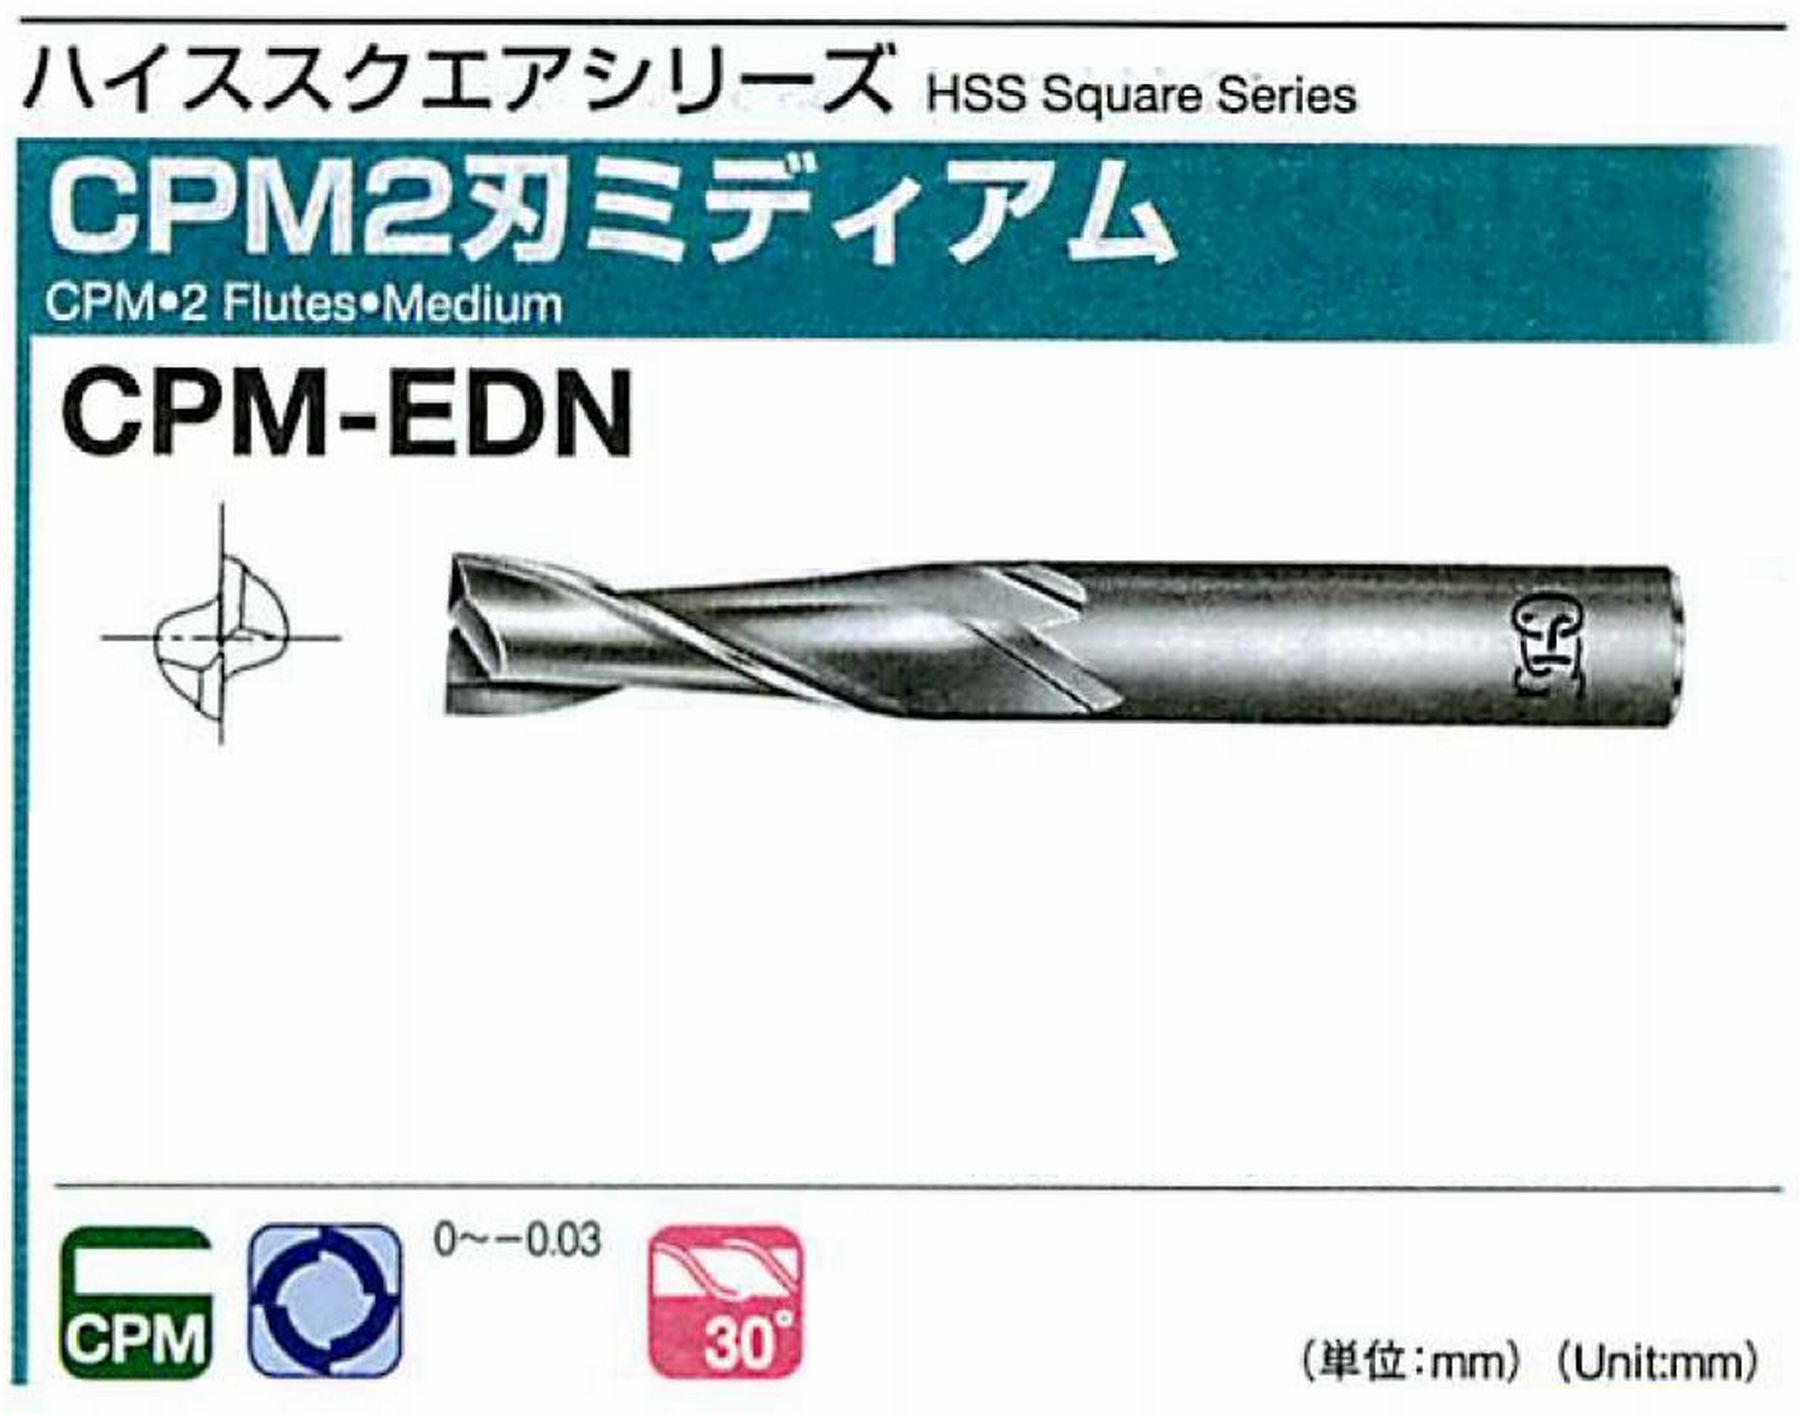 オーエスジー/OSG CPM2刃 ミディアム CPM-EDN 外径12 全長80 刃長30 シャンク径12mm